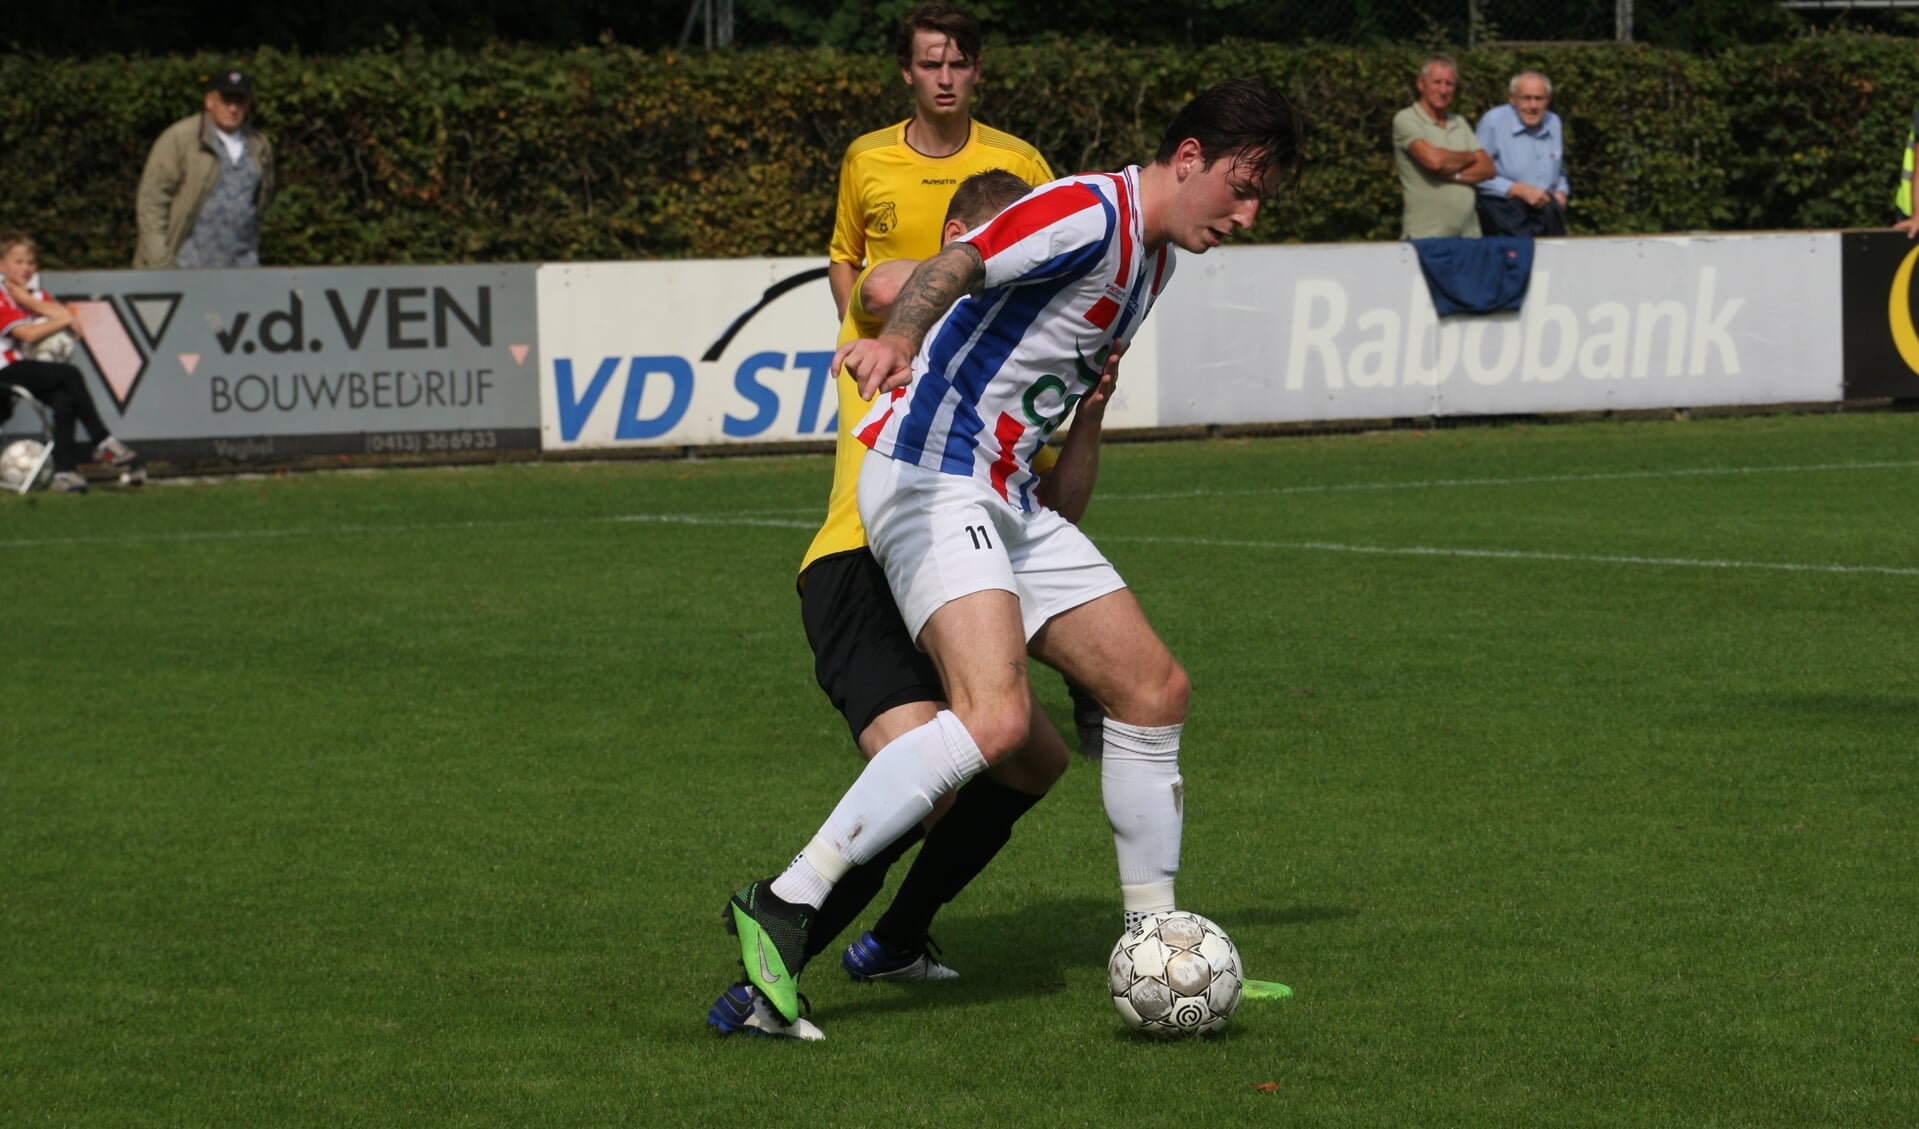 Stijn van den Broek opende met een fraaie vrije trap de score namens UDI'19.